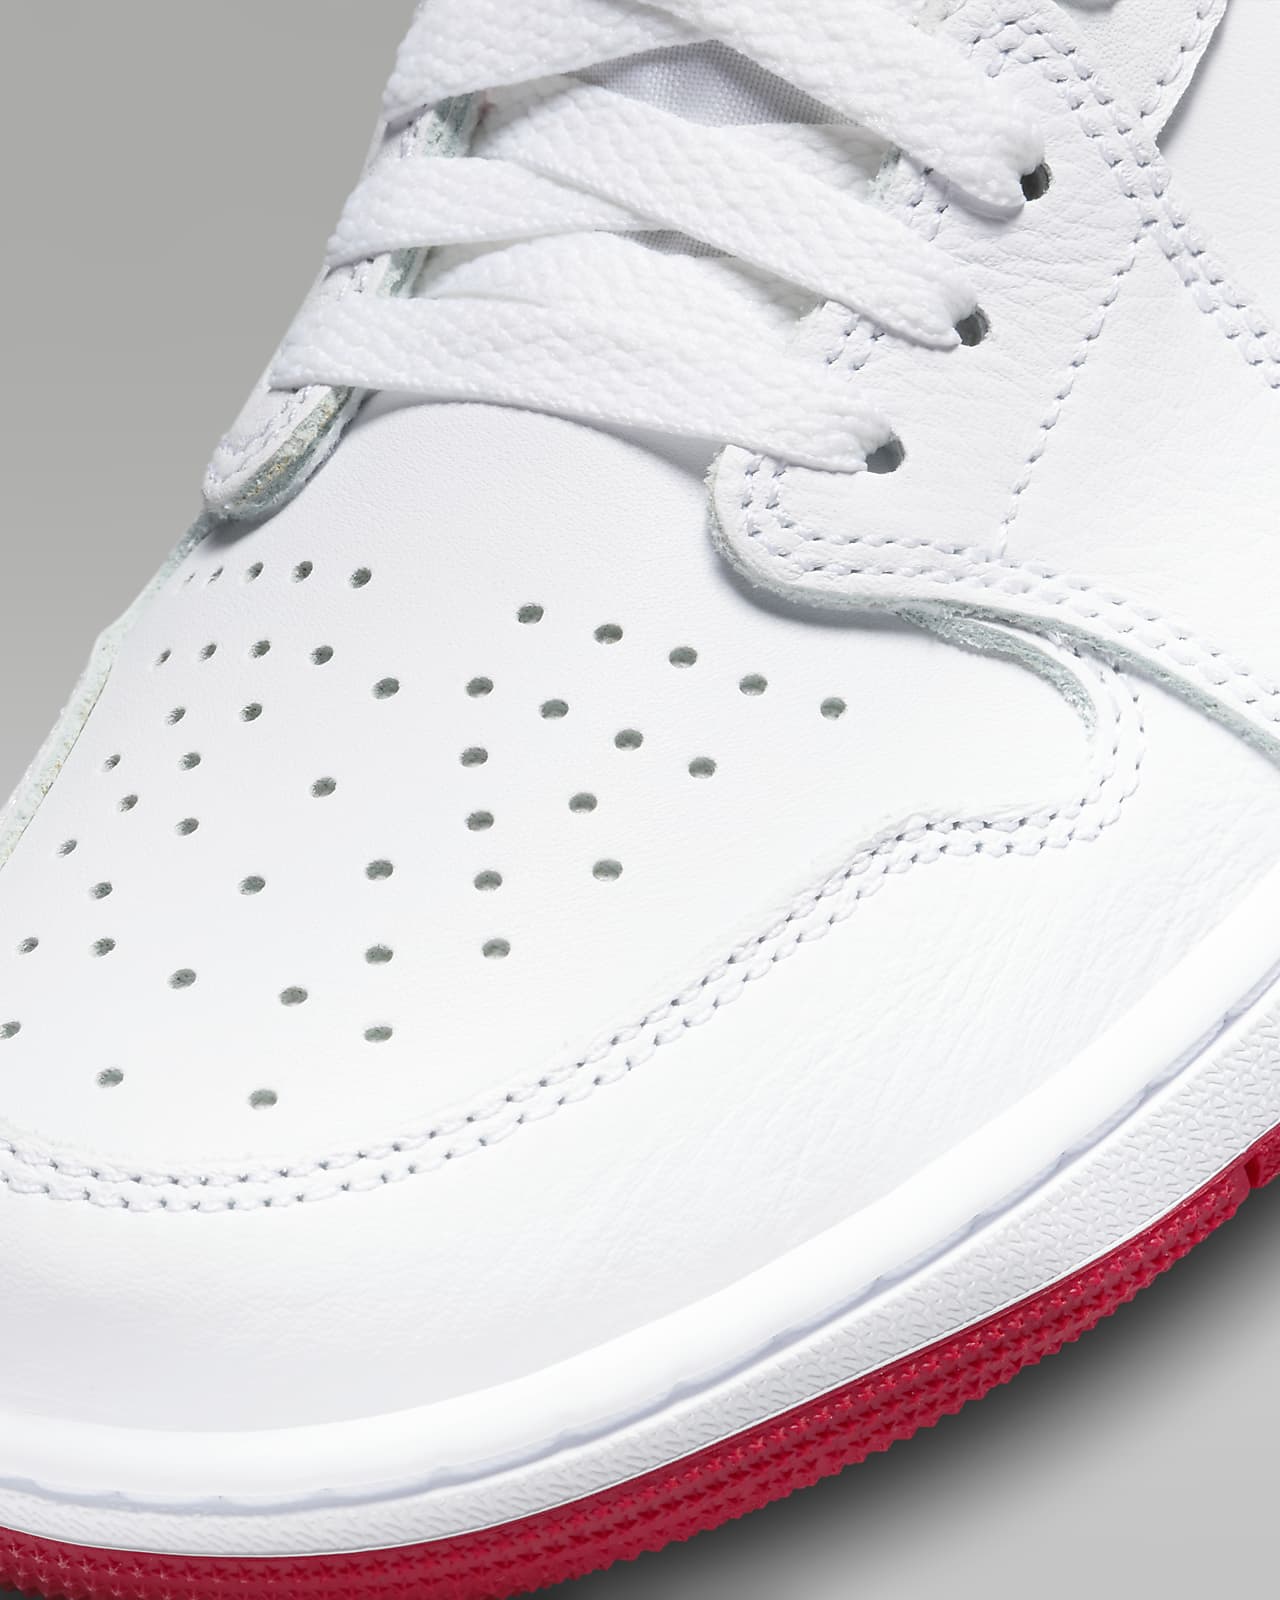 Jordan 1 Retro High OG White/University Red/Black Men's Shoe